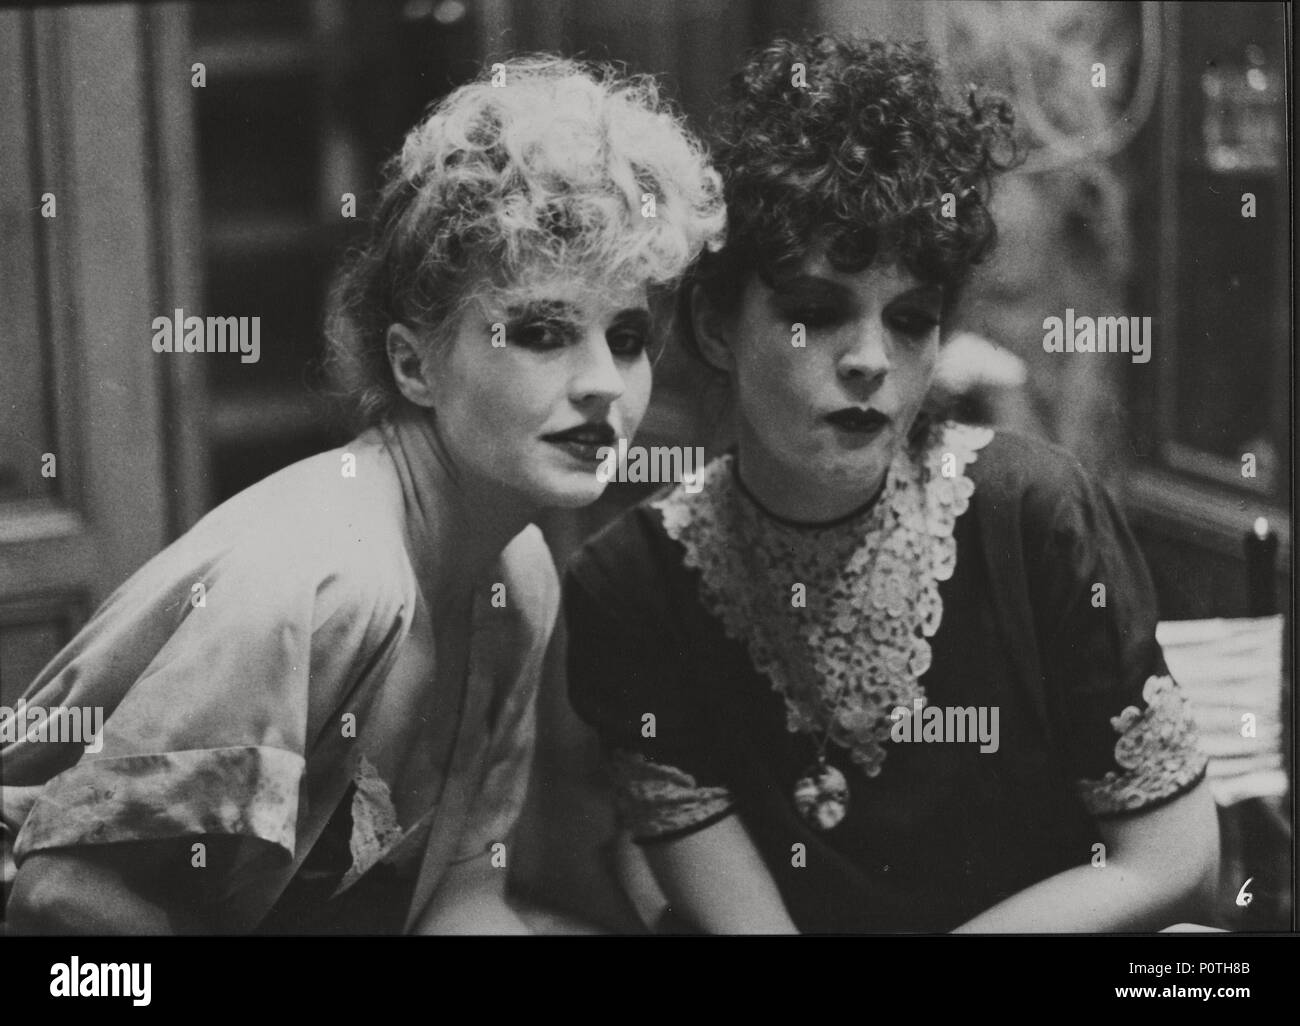 Original Film Title: DIE EHE DER MARIA BRAUN.  English Title: MARRIAGE OF MARIA BRAUN, THE.  Film Director: RAINER WERNER FASSBINDER.  Year: 1979.  Stars: HANNA SCHYGULLA; ELISABETH TRISSENAR. Stock Photo